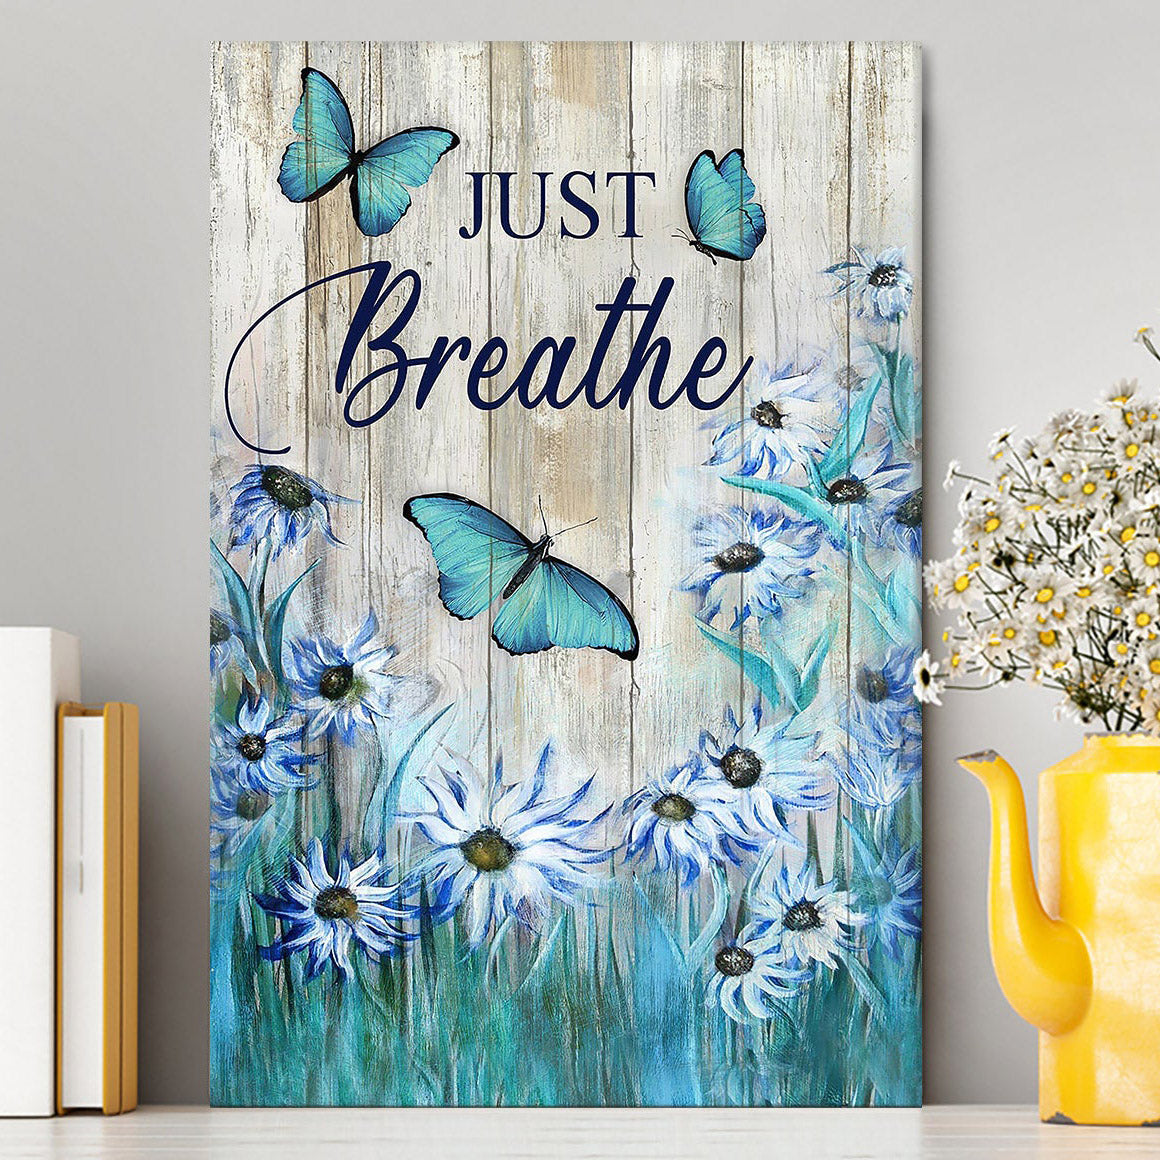 Just Breathe Butterfly Blue Flower Garden Canvas Art - Christian Art - Bible Verse Wall Art - Religious Home Decor